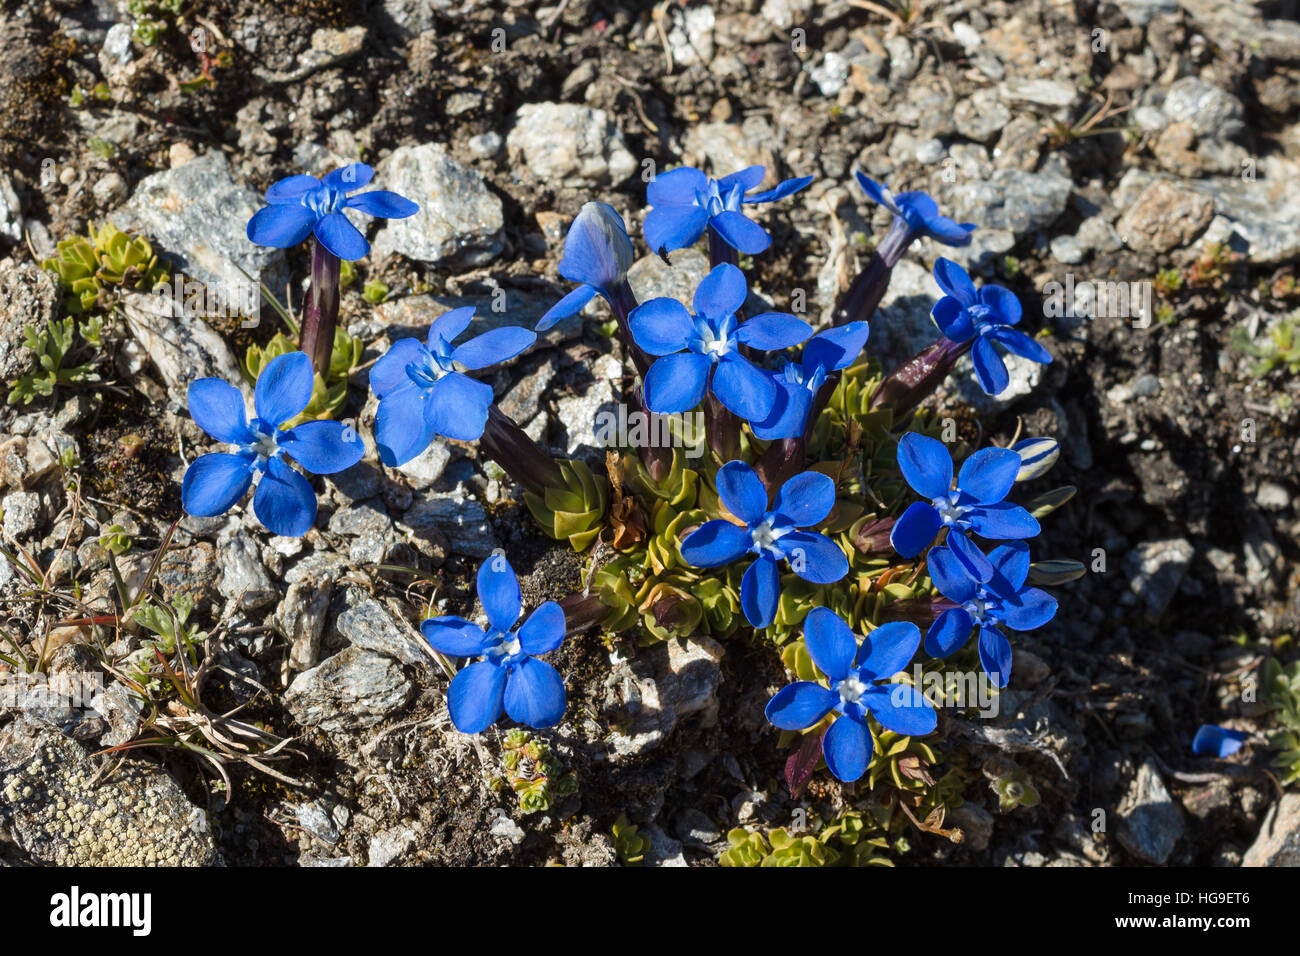 Gentiana flores alpinas Orbicularis Schur. El Valle de Aosta, Italia. Foto tomada a una altitud de 2700 m. Foto de stock